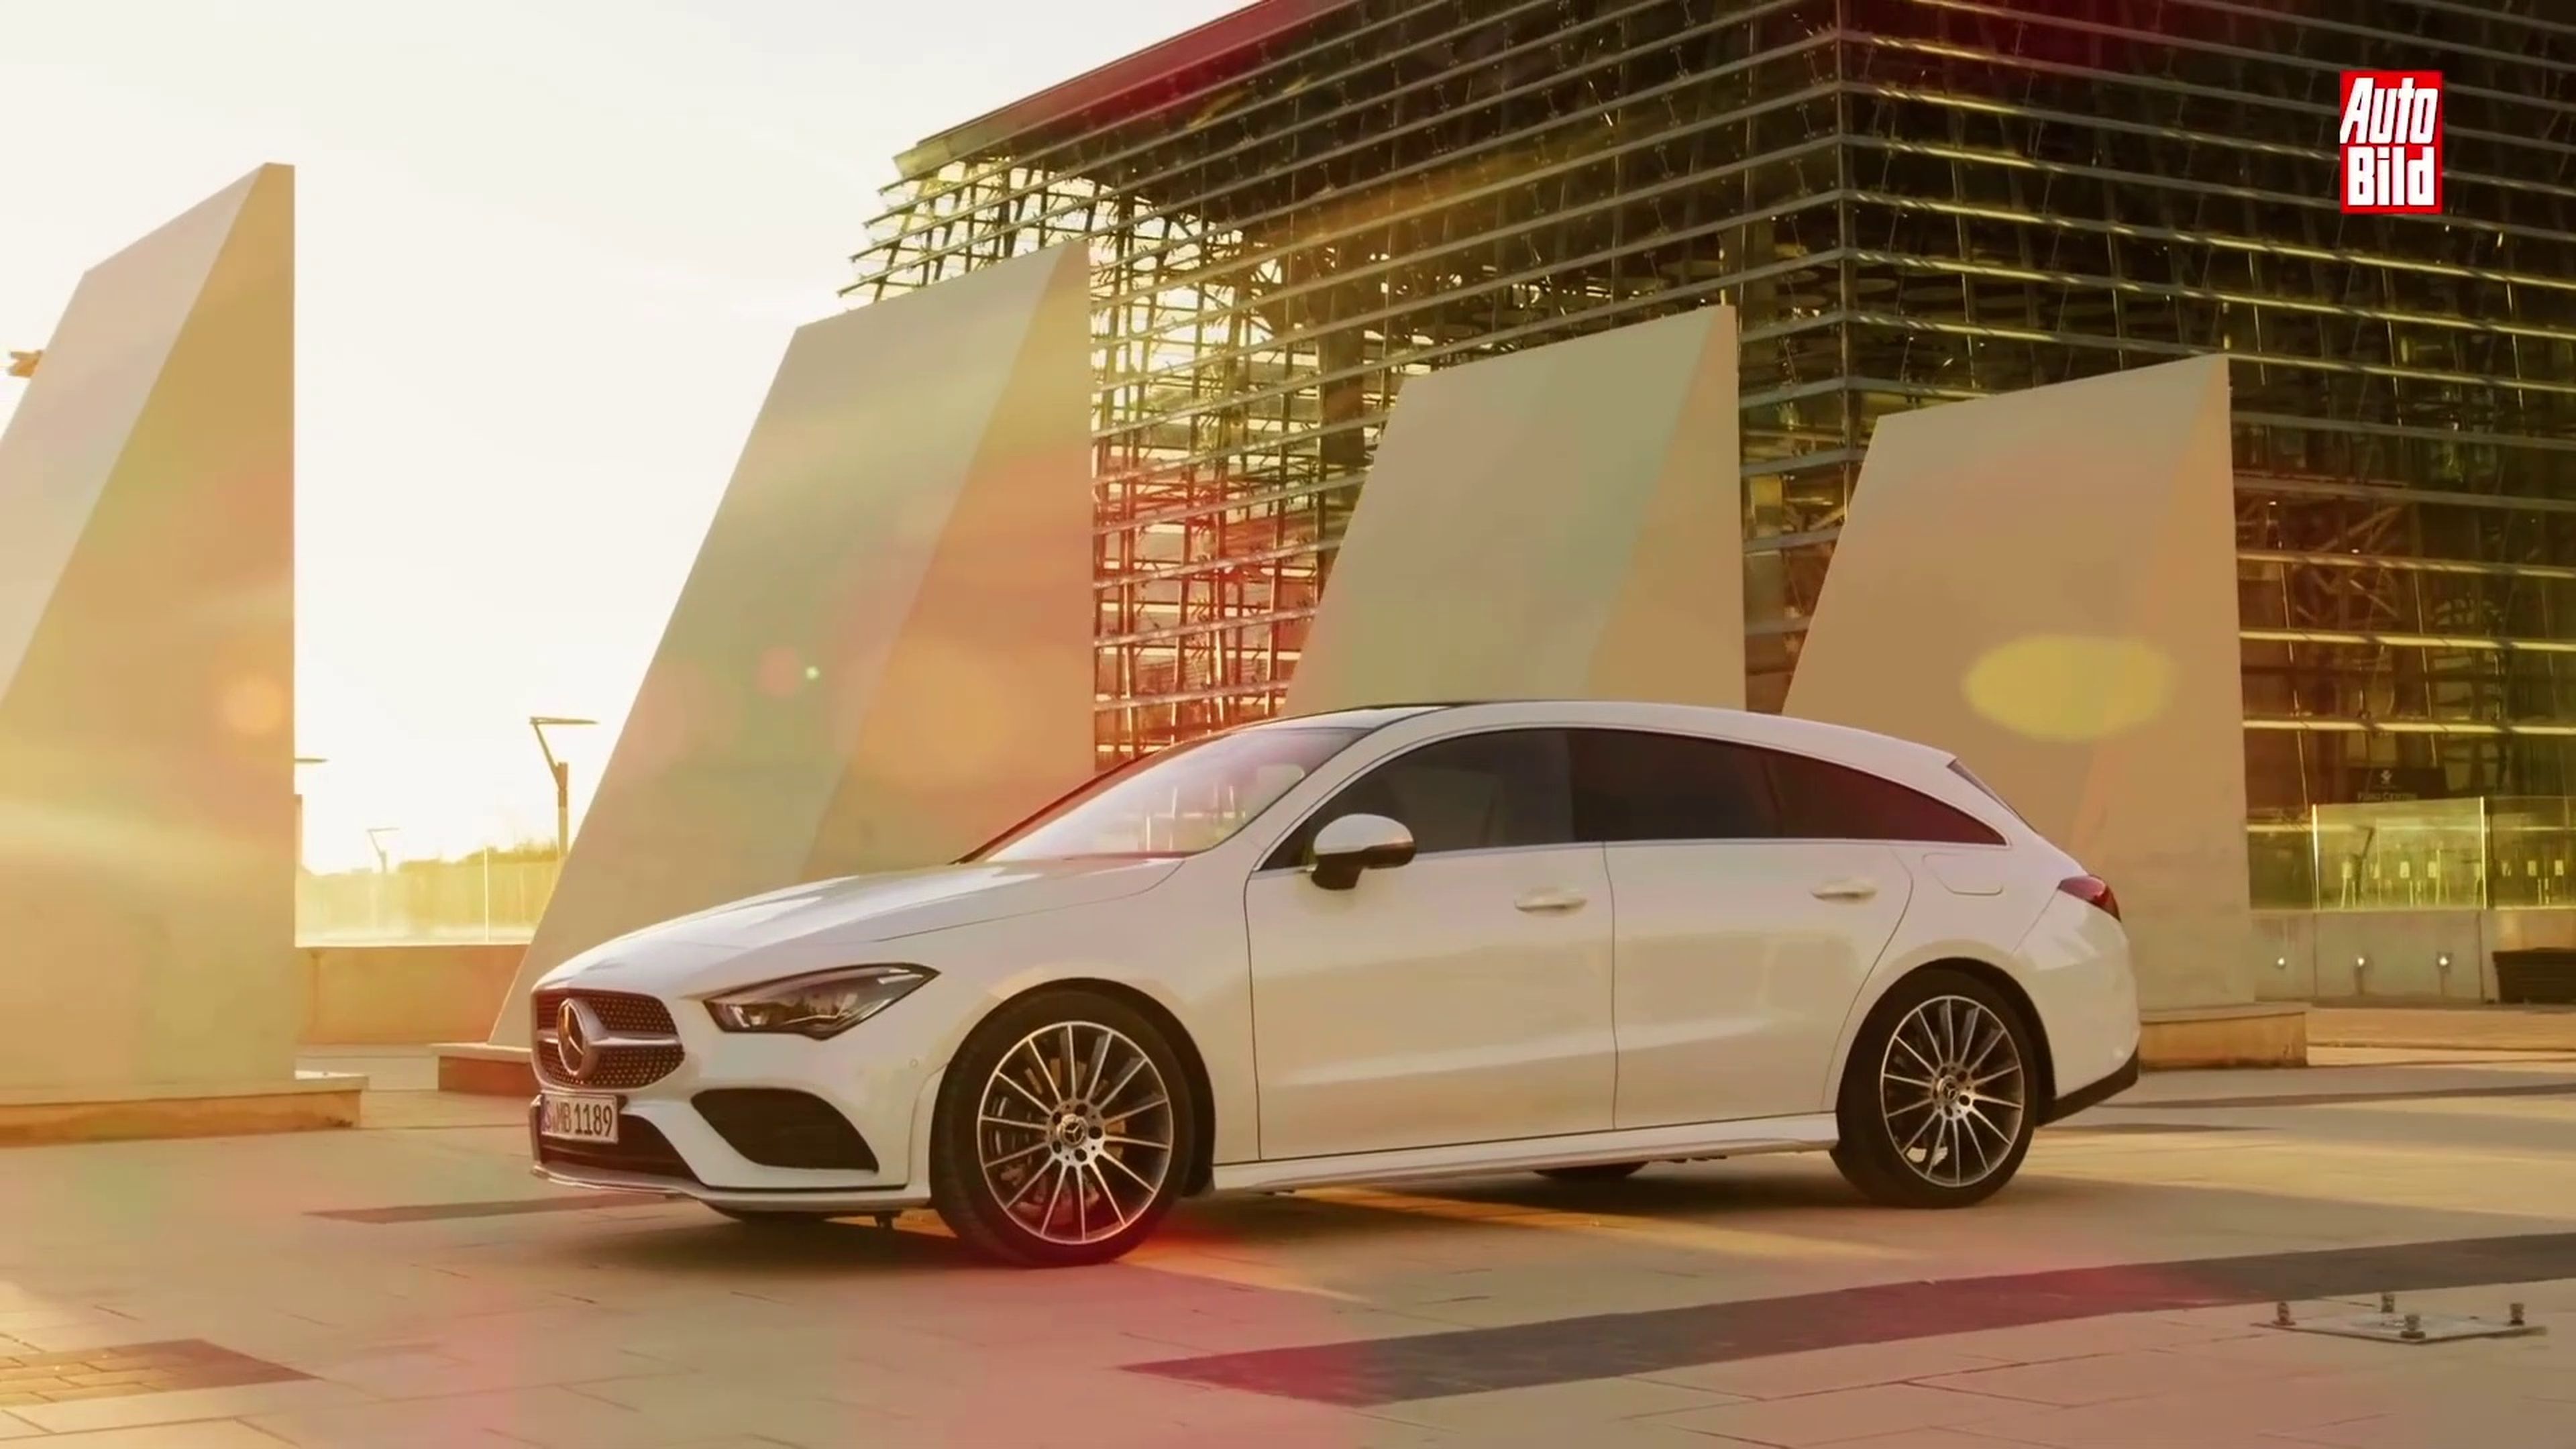 VÍDEO: Descubre cómo es el Mercedes-Benz CLA Shooting Brake 2019